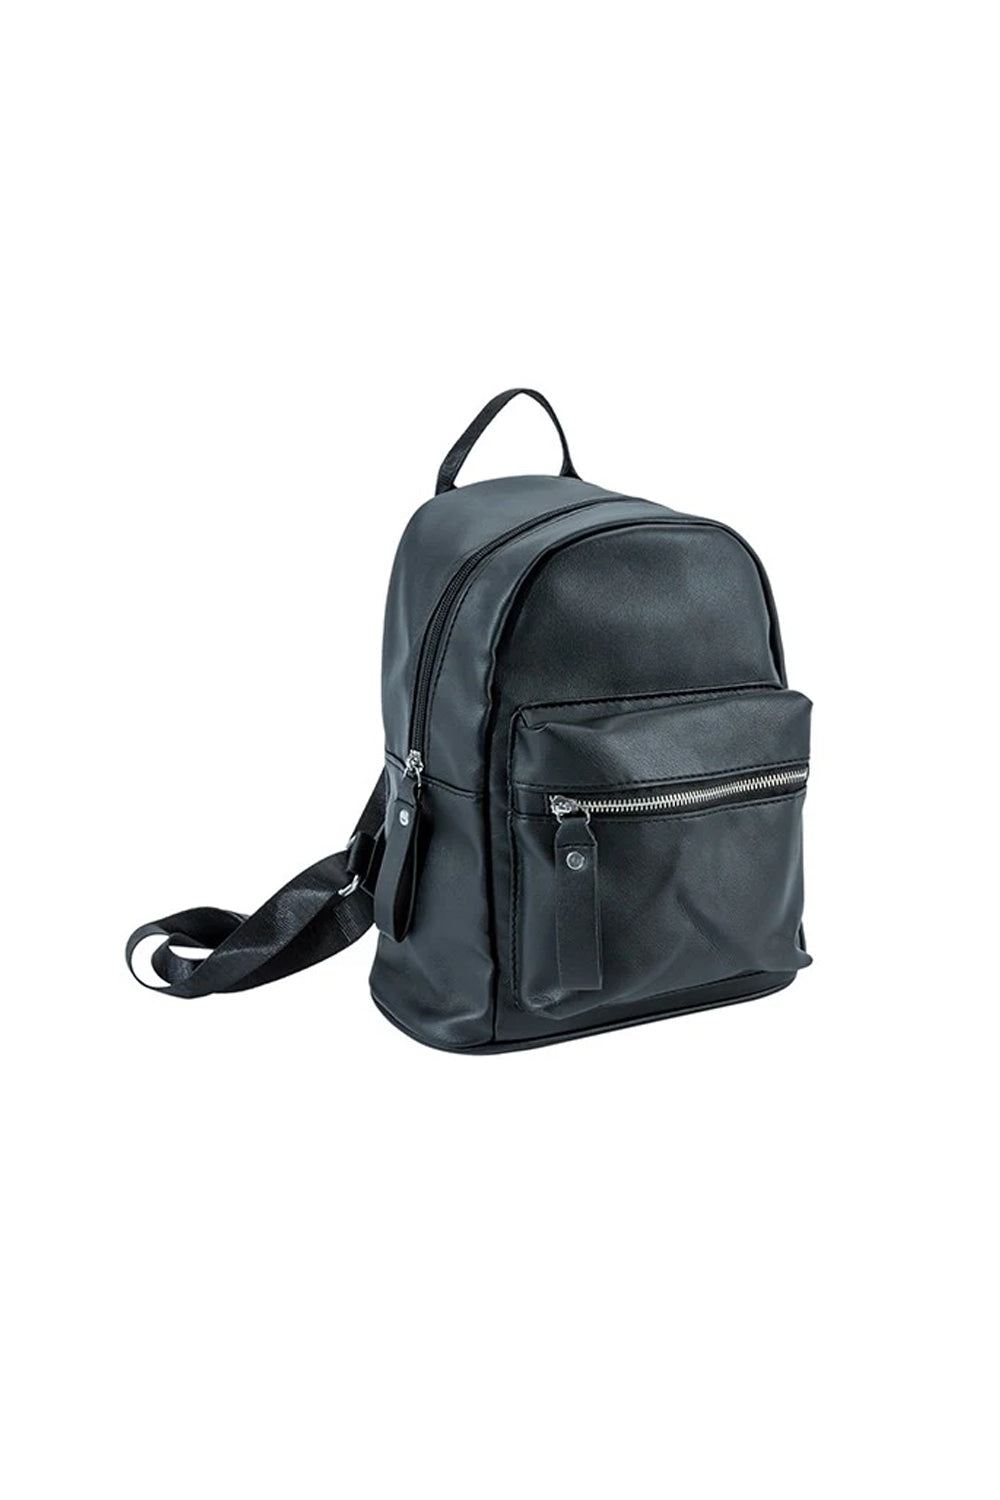 Pu Leather Fashion Backpack